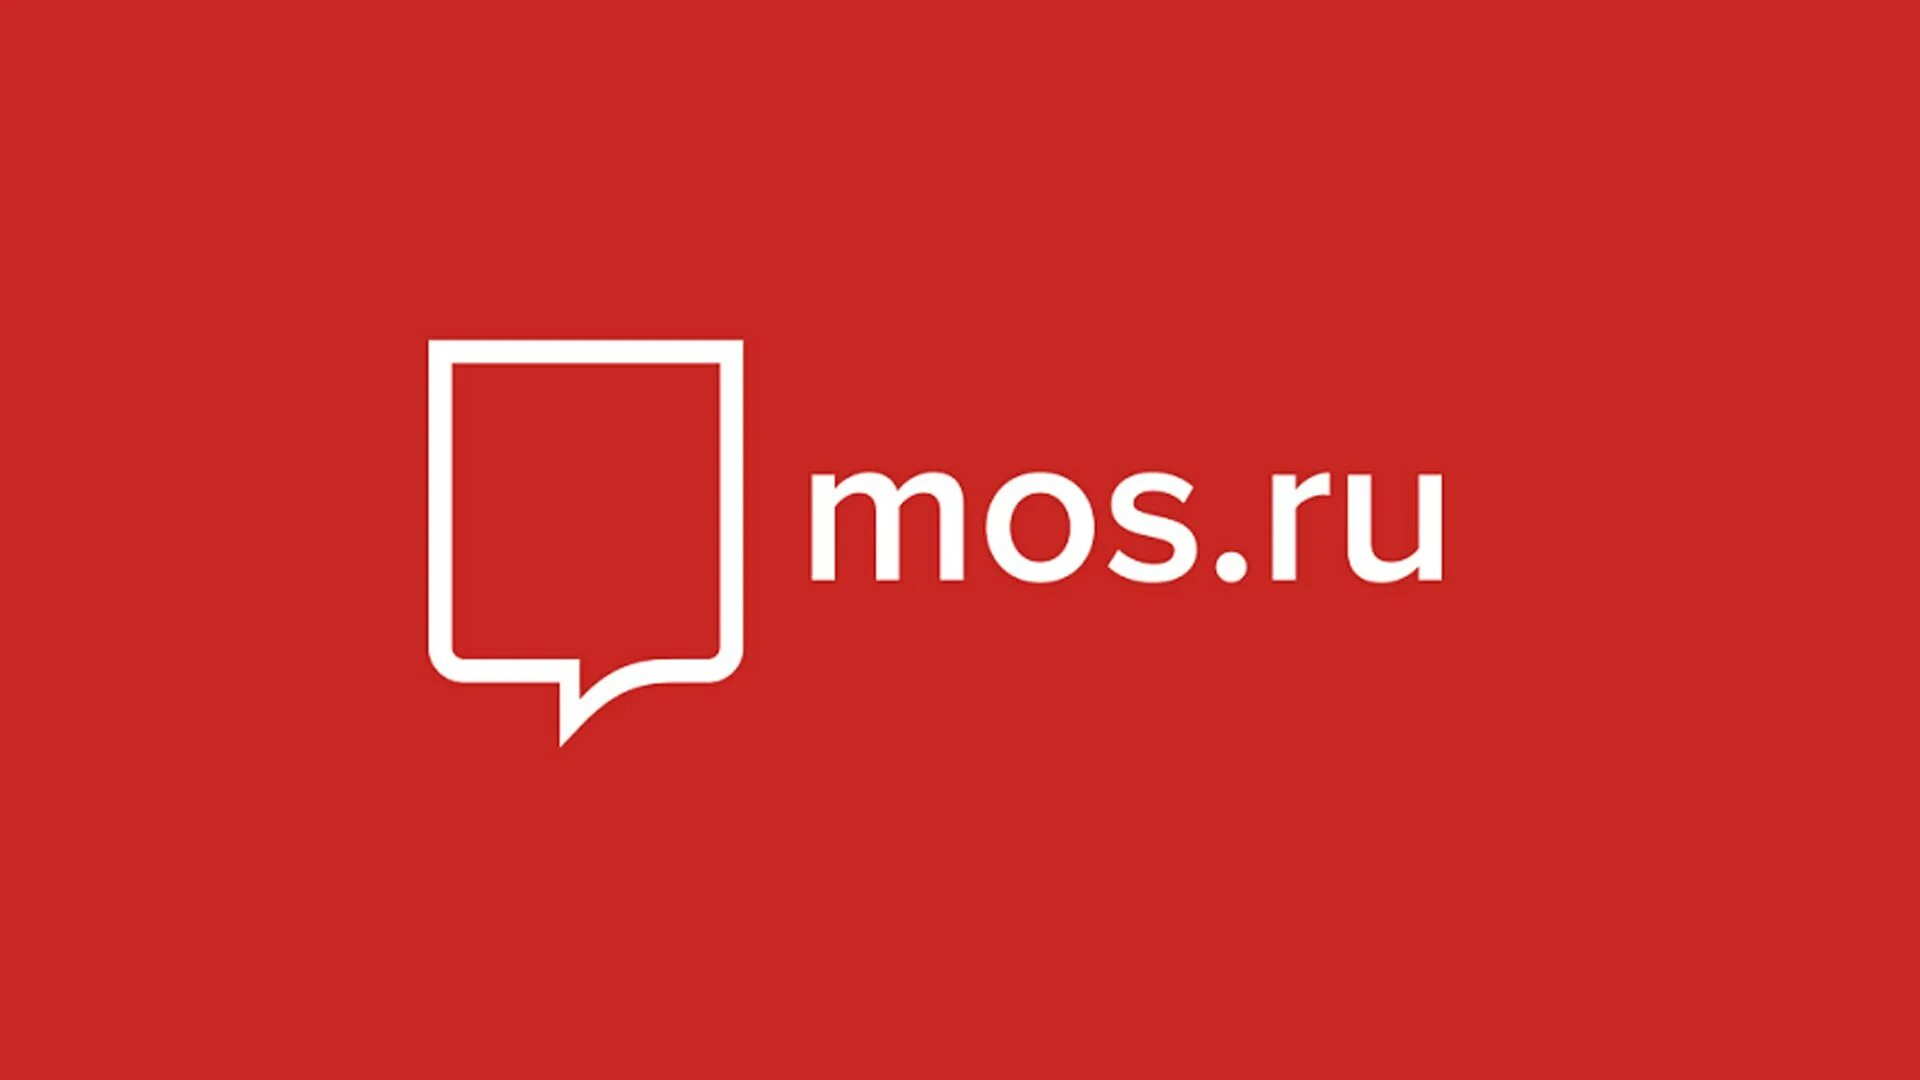 Www mos ru услуги. Мос ру. Mos.ru логотип. Логотип сайта мэра Москвы. Госуслуги Москвы логотип.